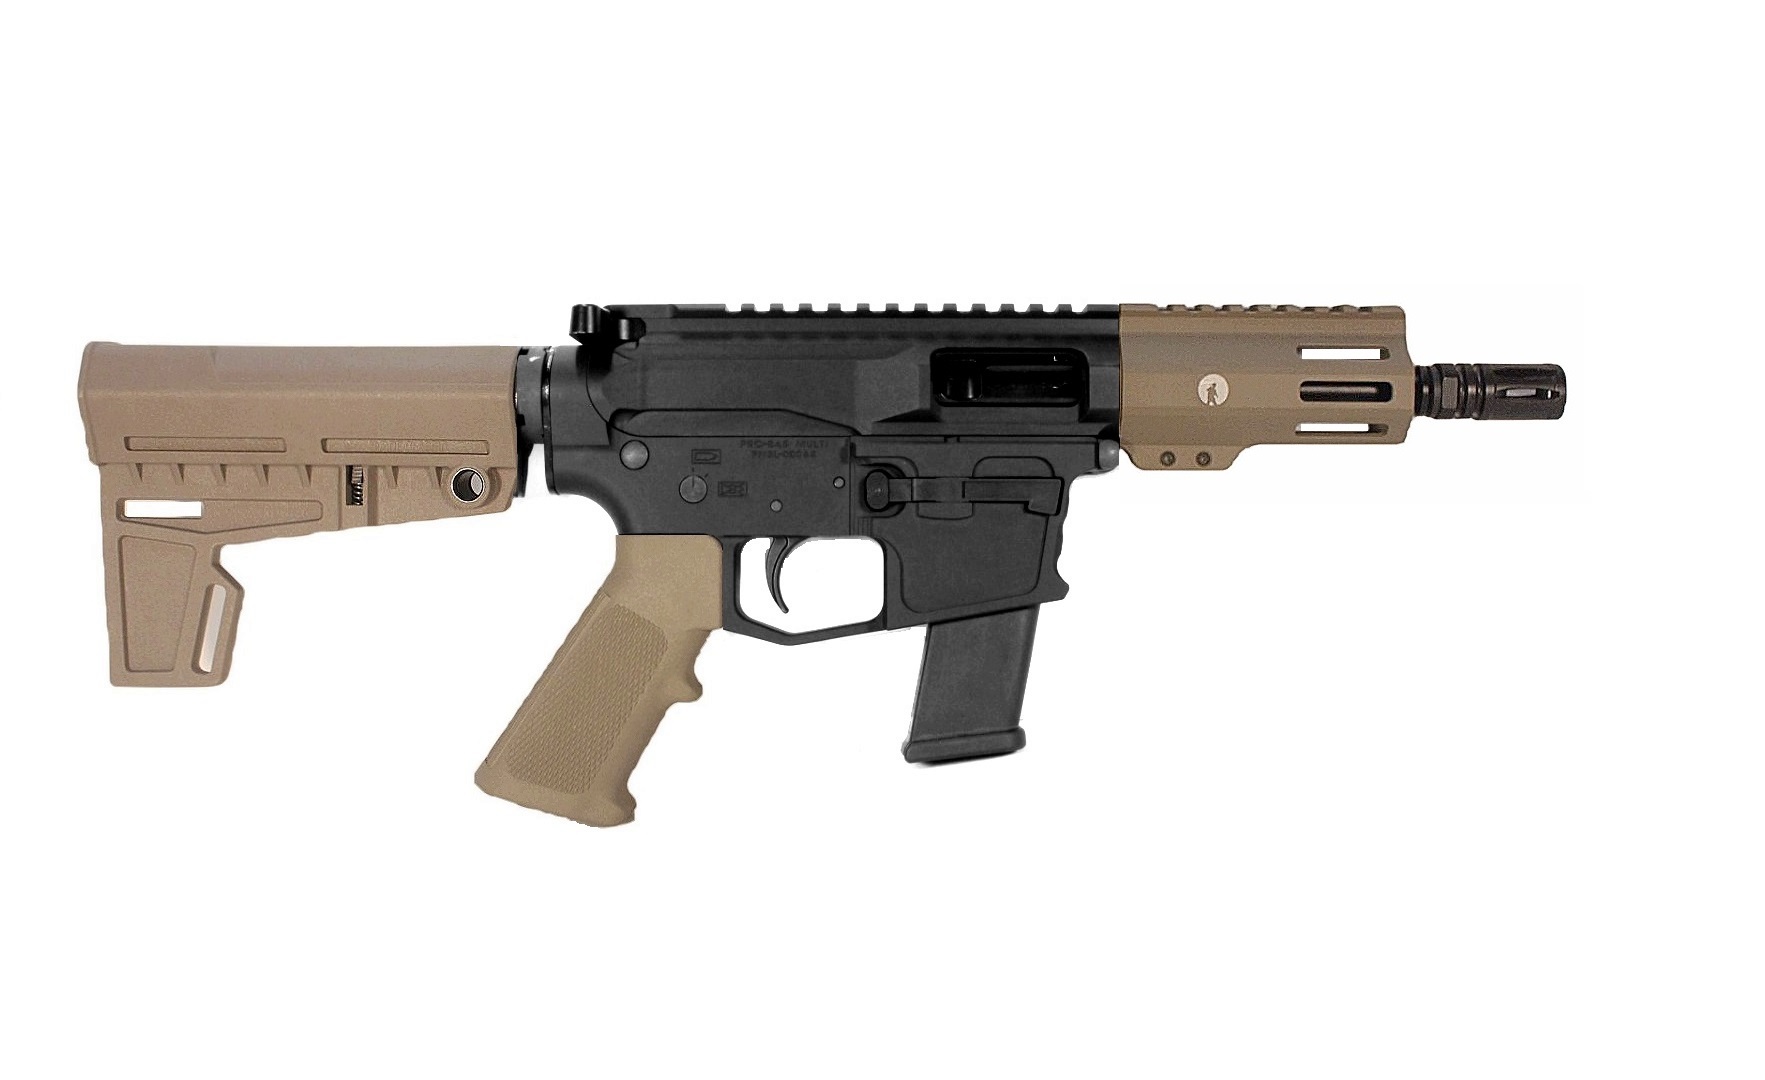 5 inch 45 ACP PCC Pistol in BLK/FDE